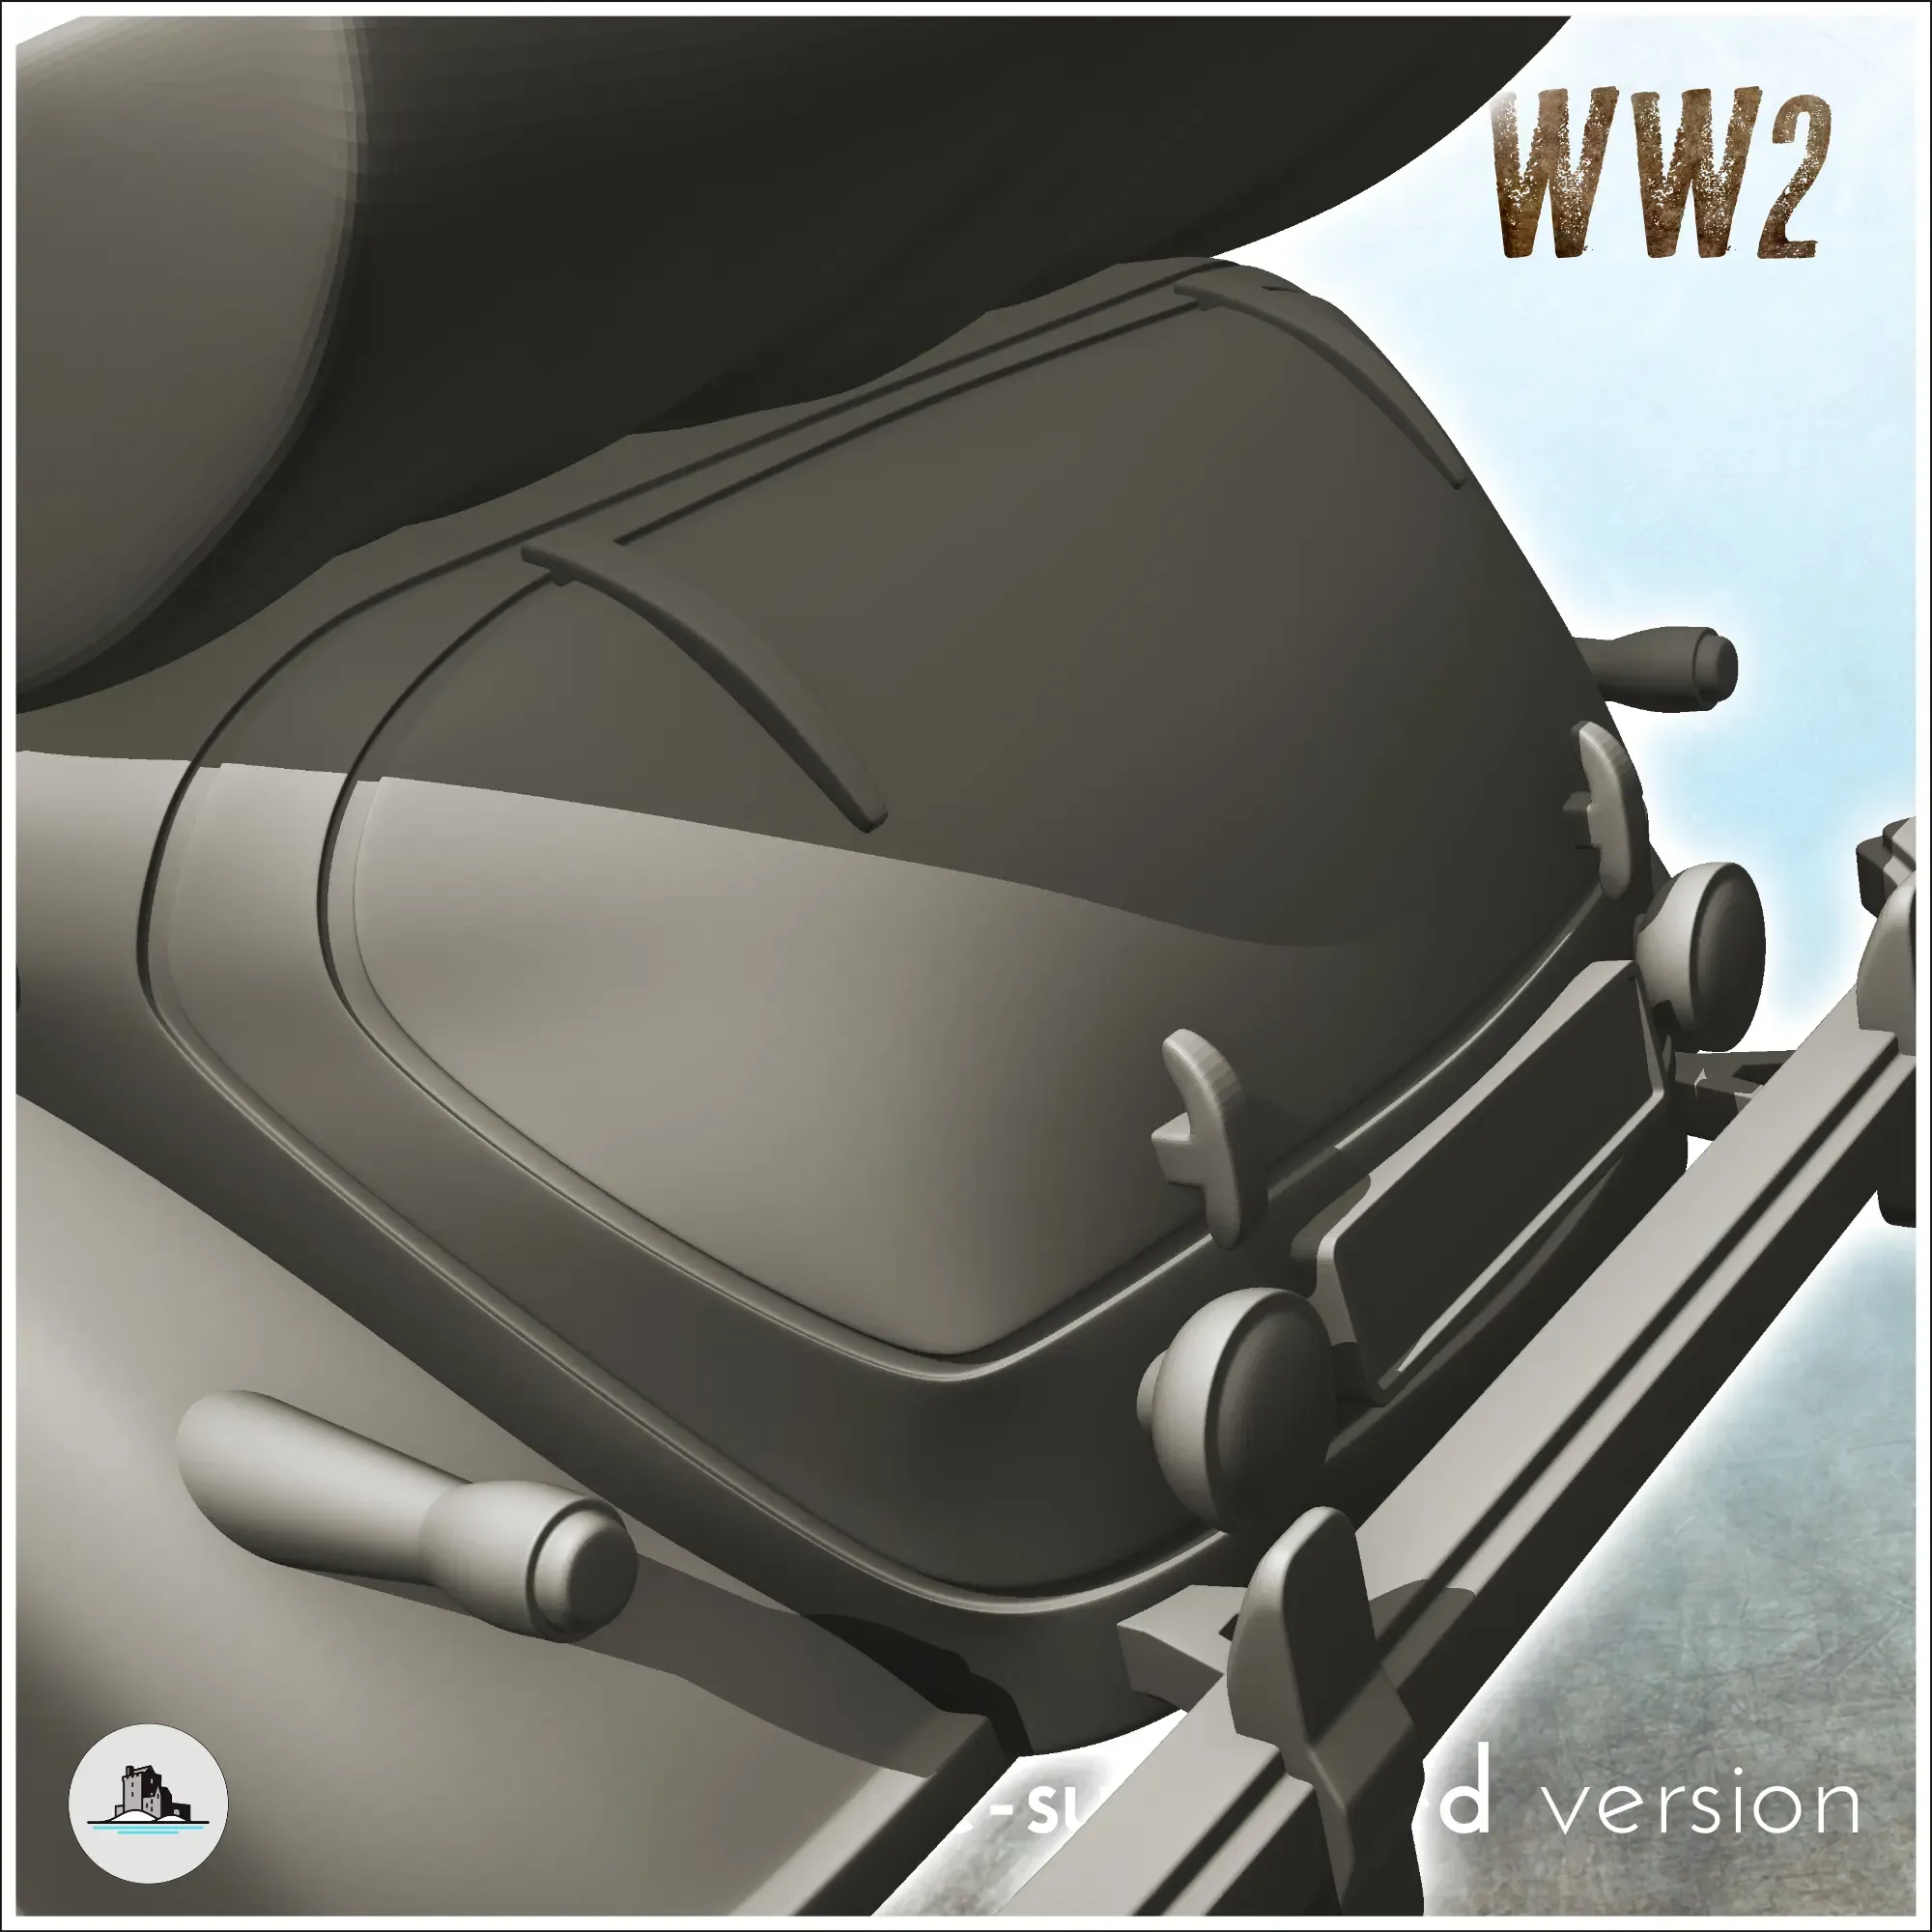 Mercedes Benz 770 limousine - WW2 Flames of war Bolt Action